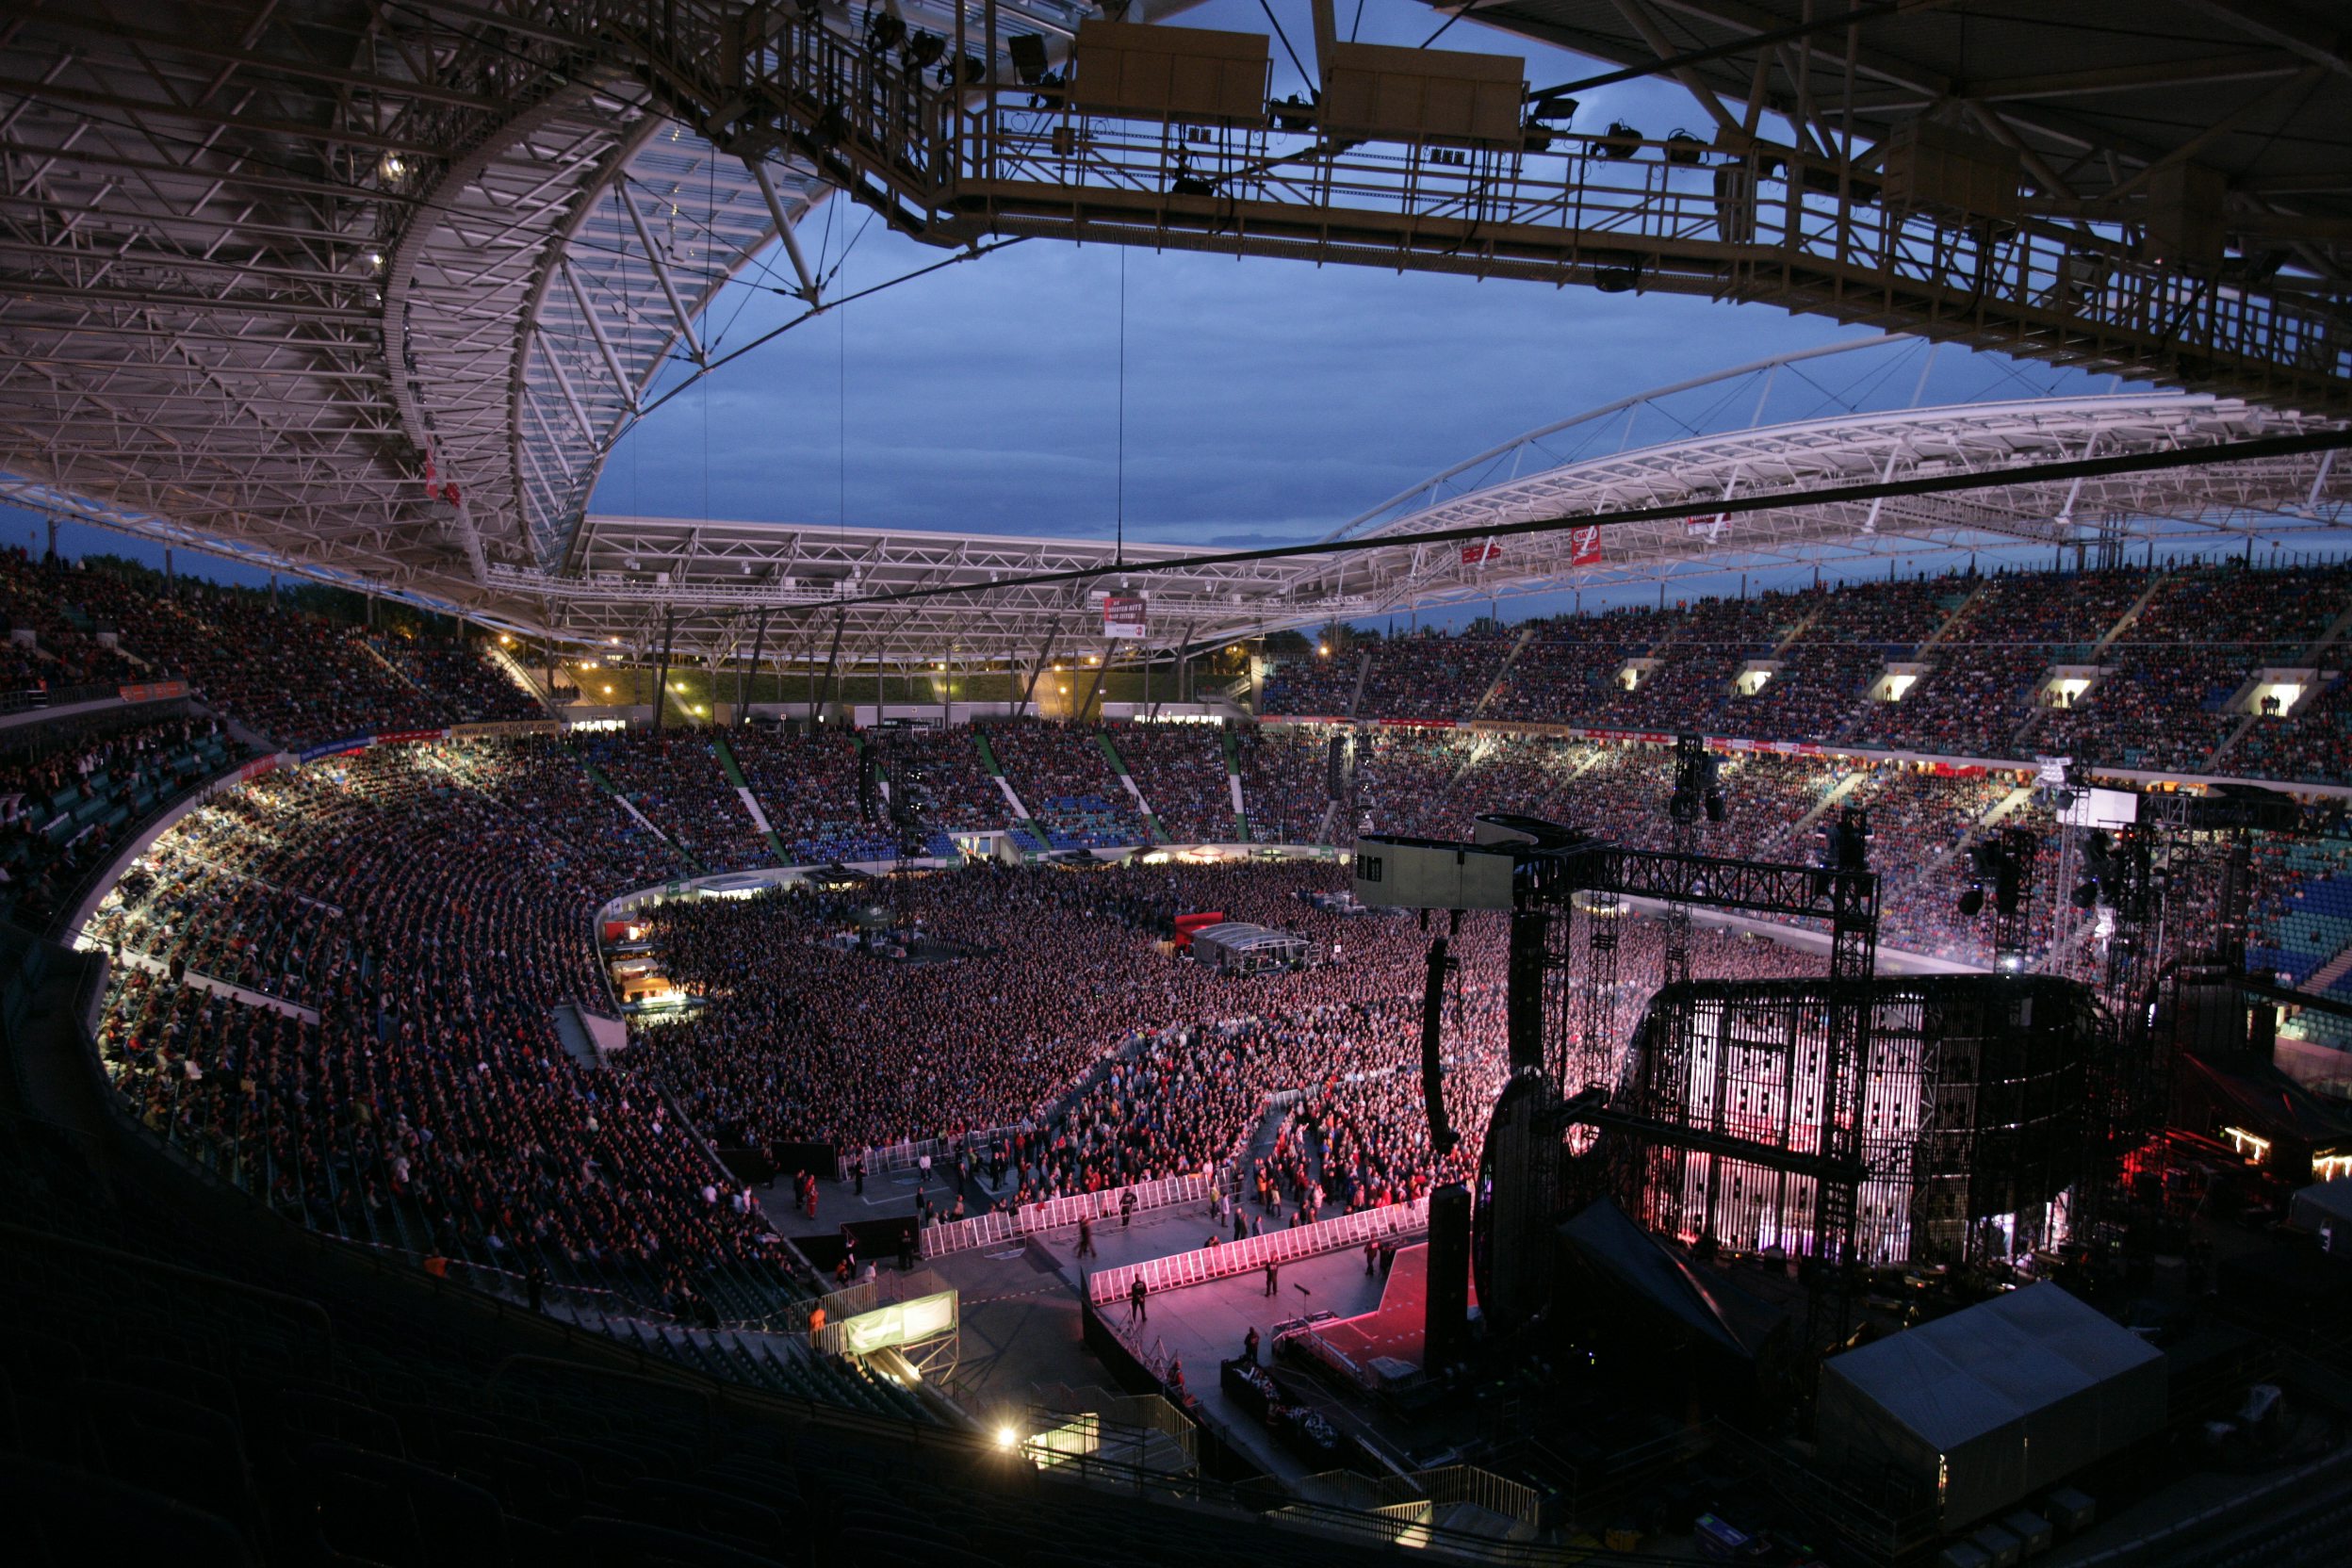 Menschenmasse vor einer beleuchteten Bühne in der Red Bull Arena am Abend.